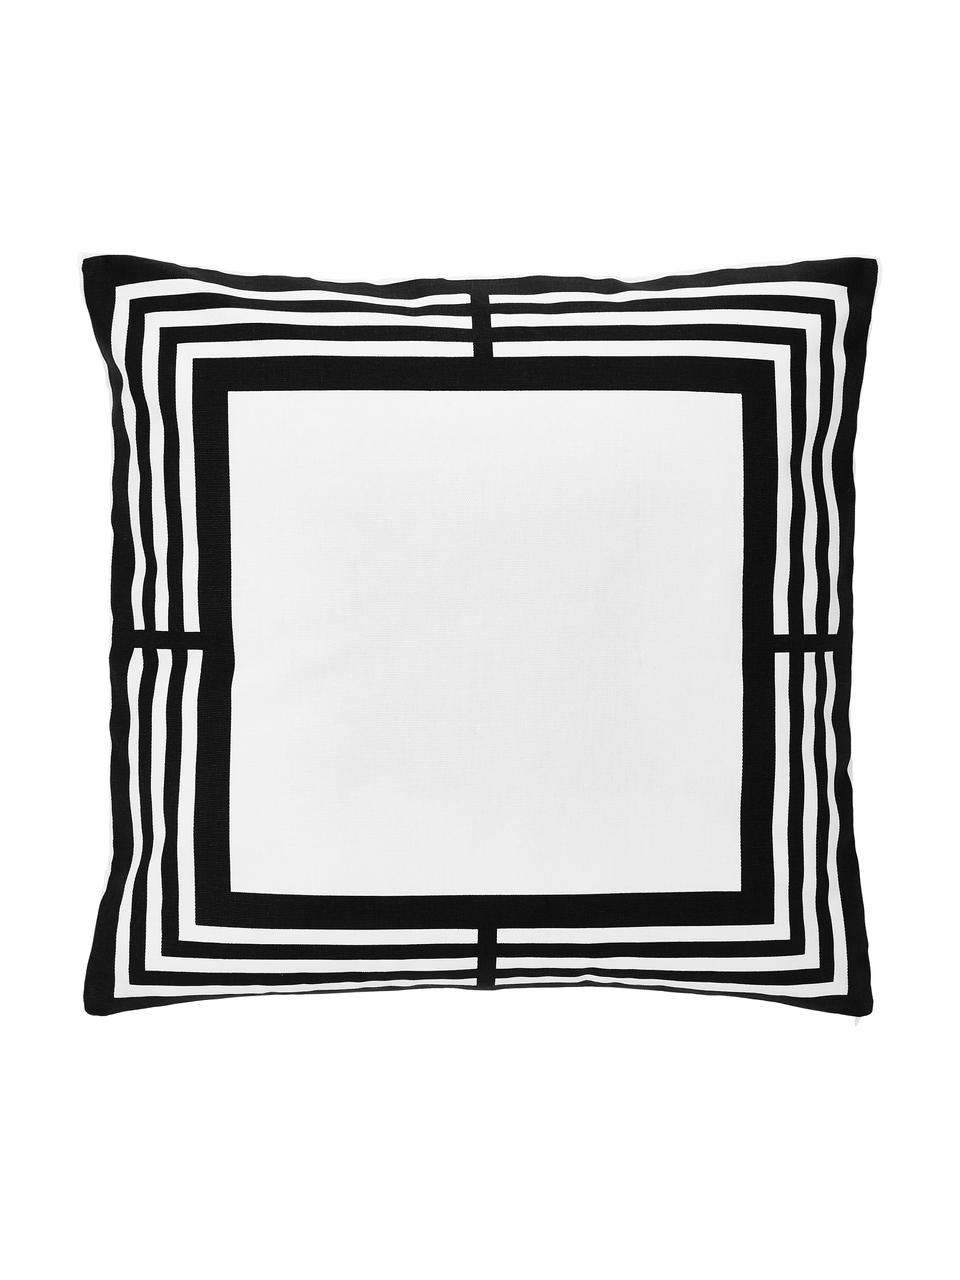 Kussenhoes Zahra in zwart/wit met grafisch patroon, 100% katoen, Wit, zwart, 45 x 45 cm